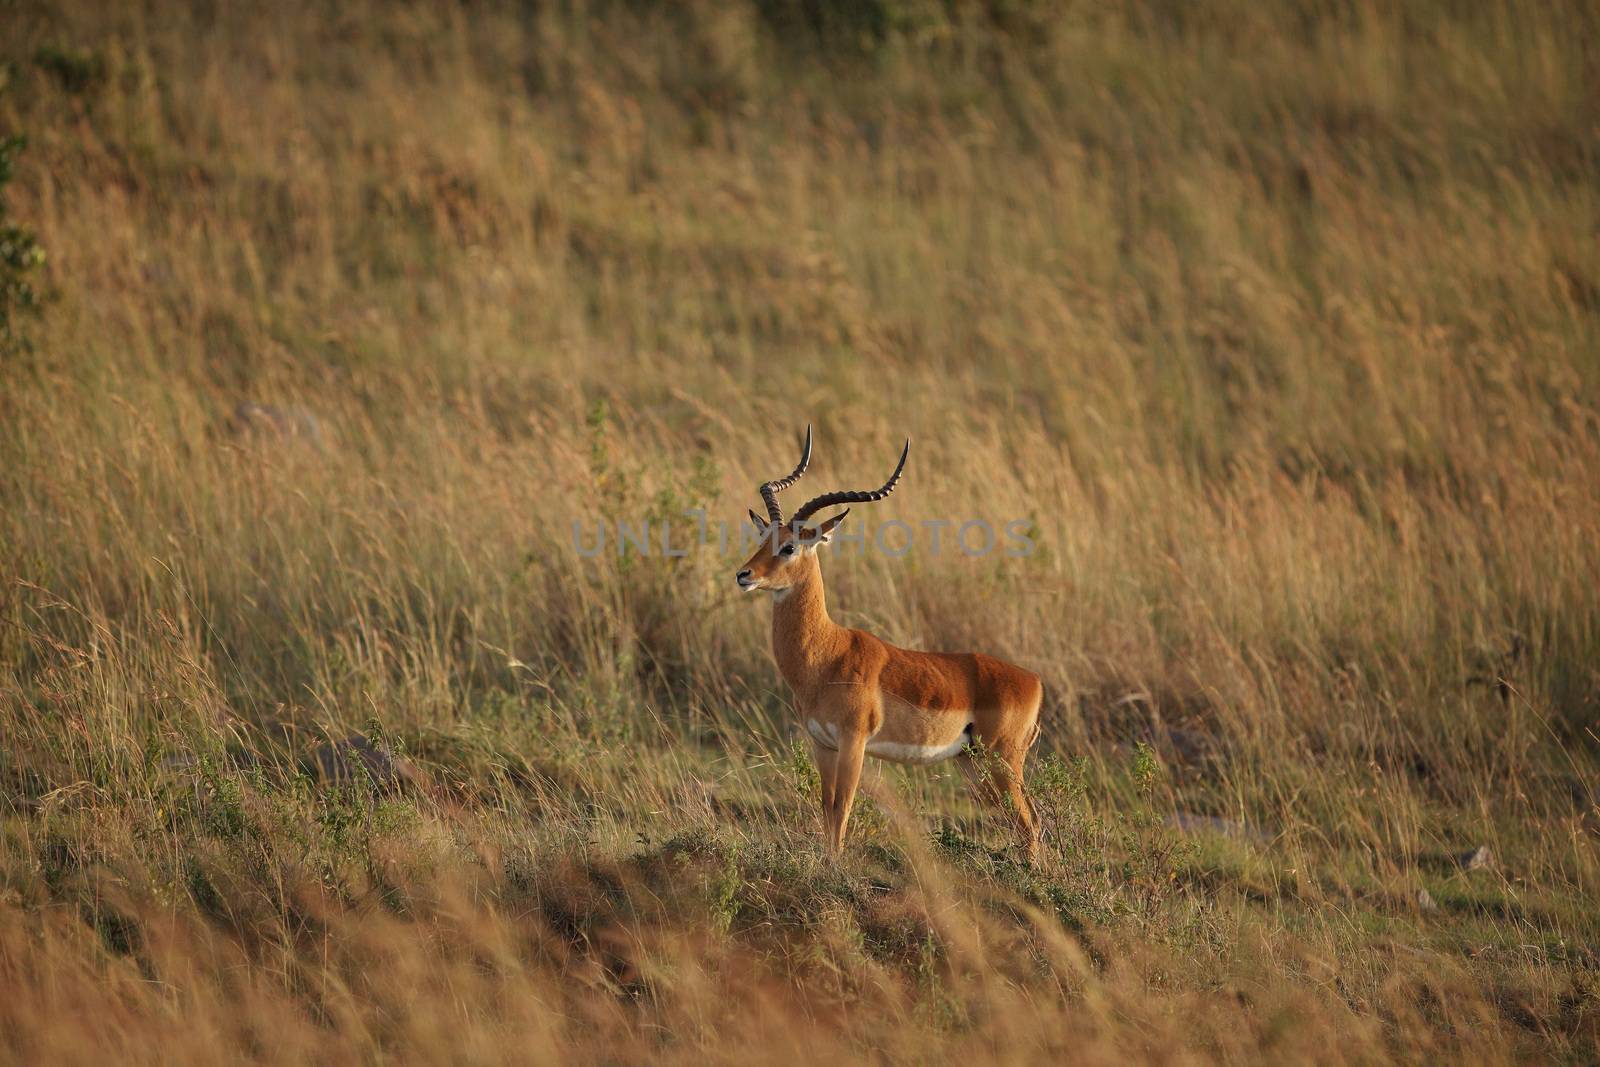 Impala in the wilderness by ozkanzozmen